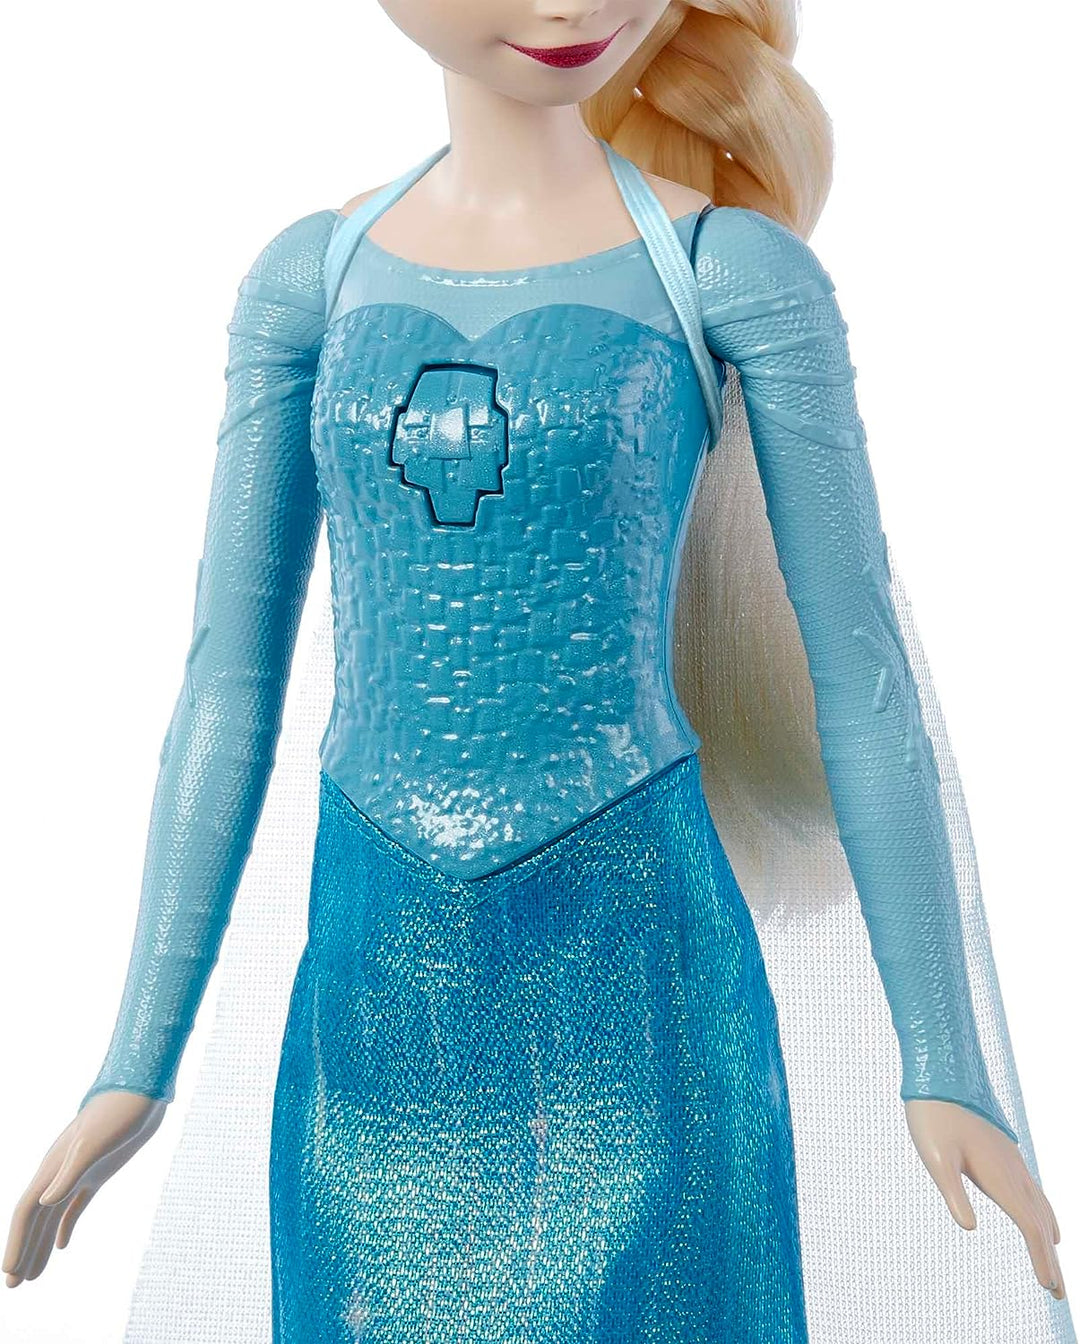 Disney Frozen Toys, singende Elsa-Puppe in charakteristischer Kleidung, singt „Let It Go“ f